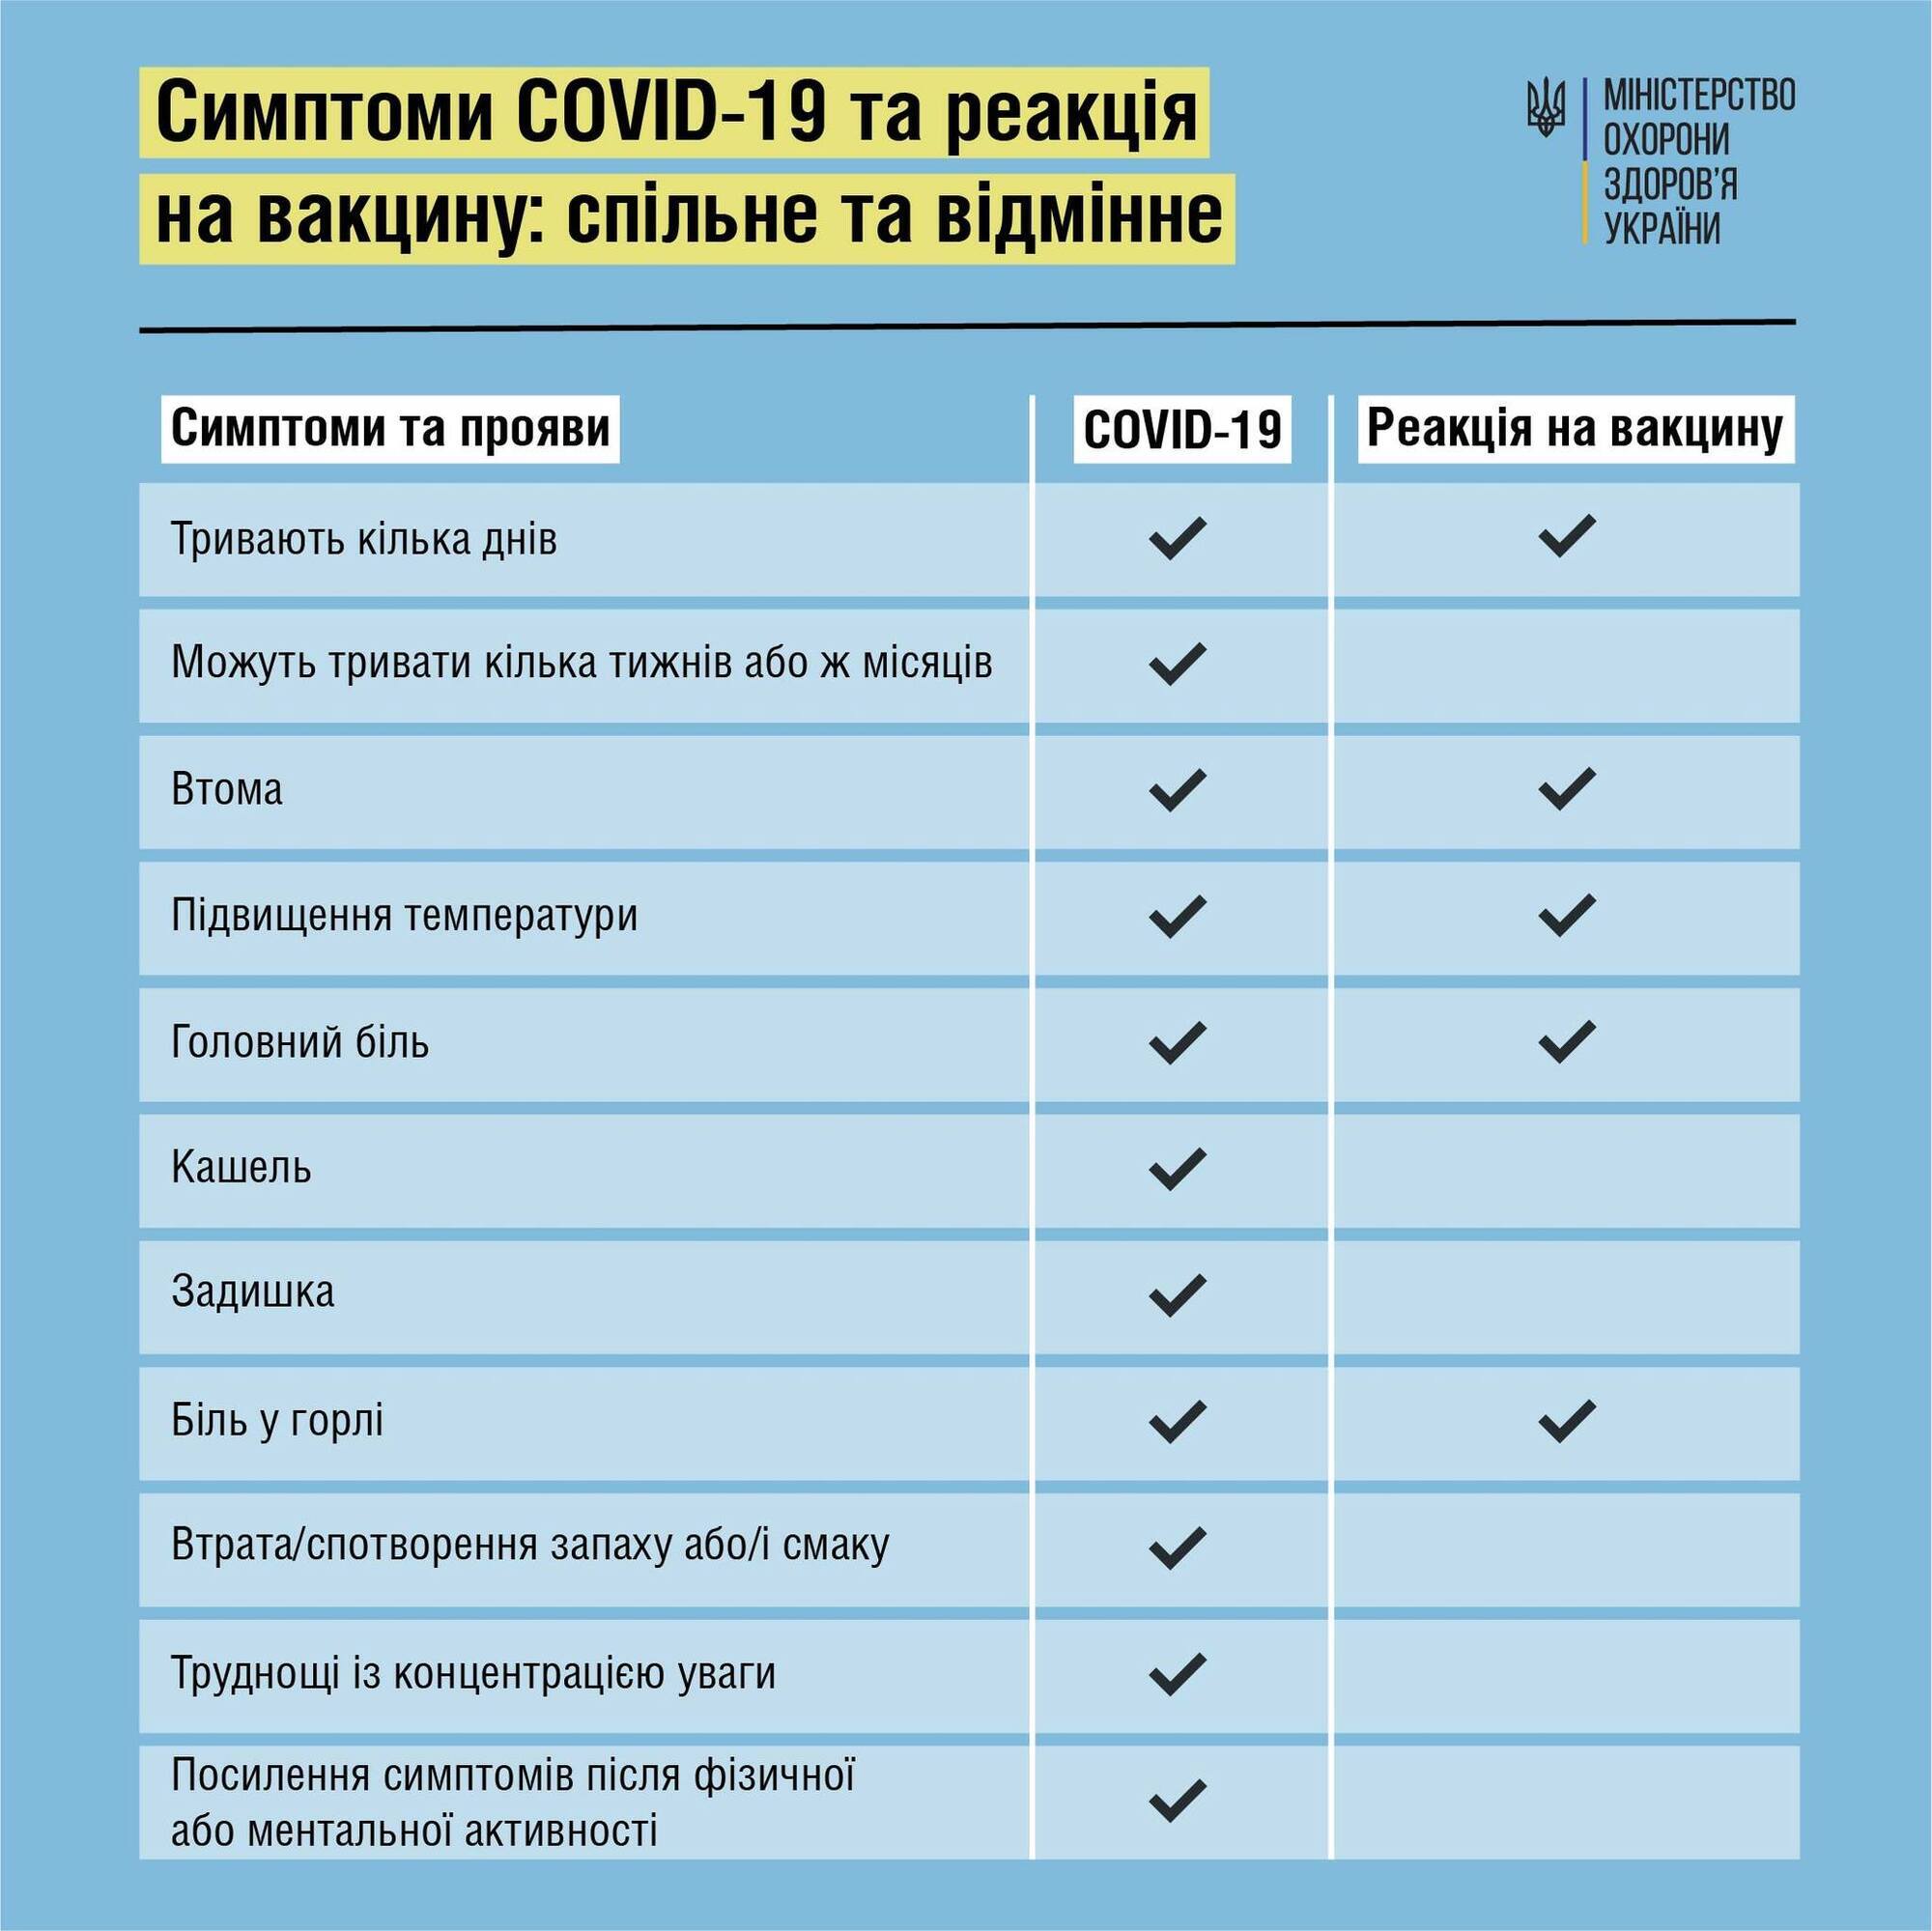 Сравнение симптомов COVID-19 и реакции на вакцину